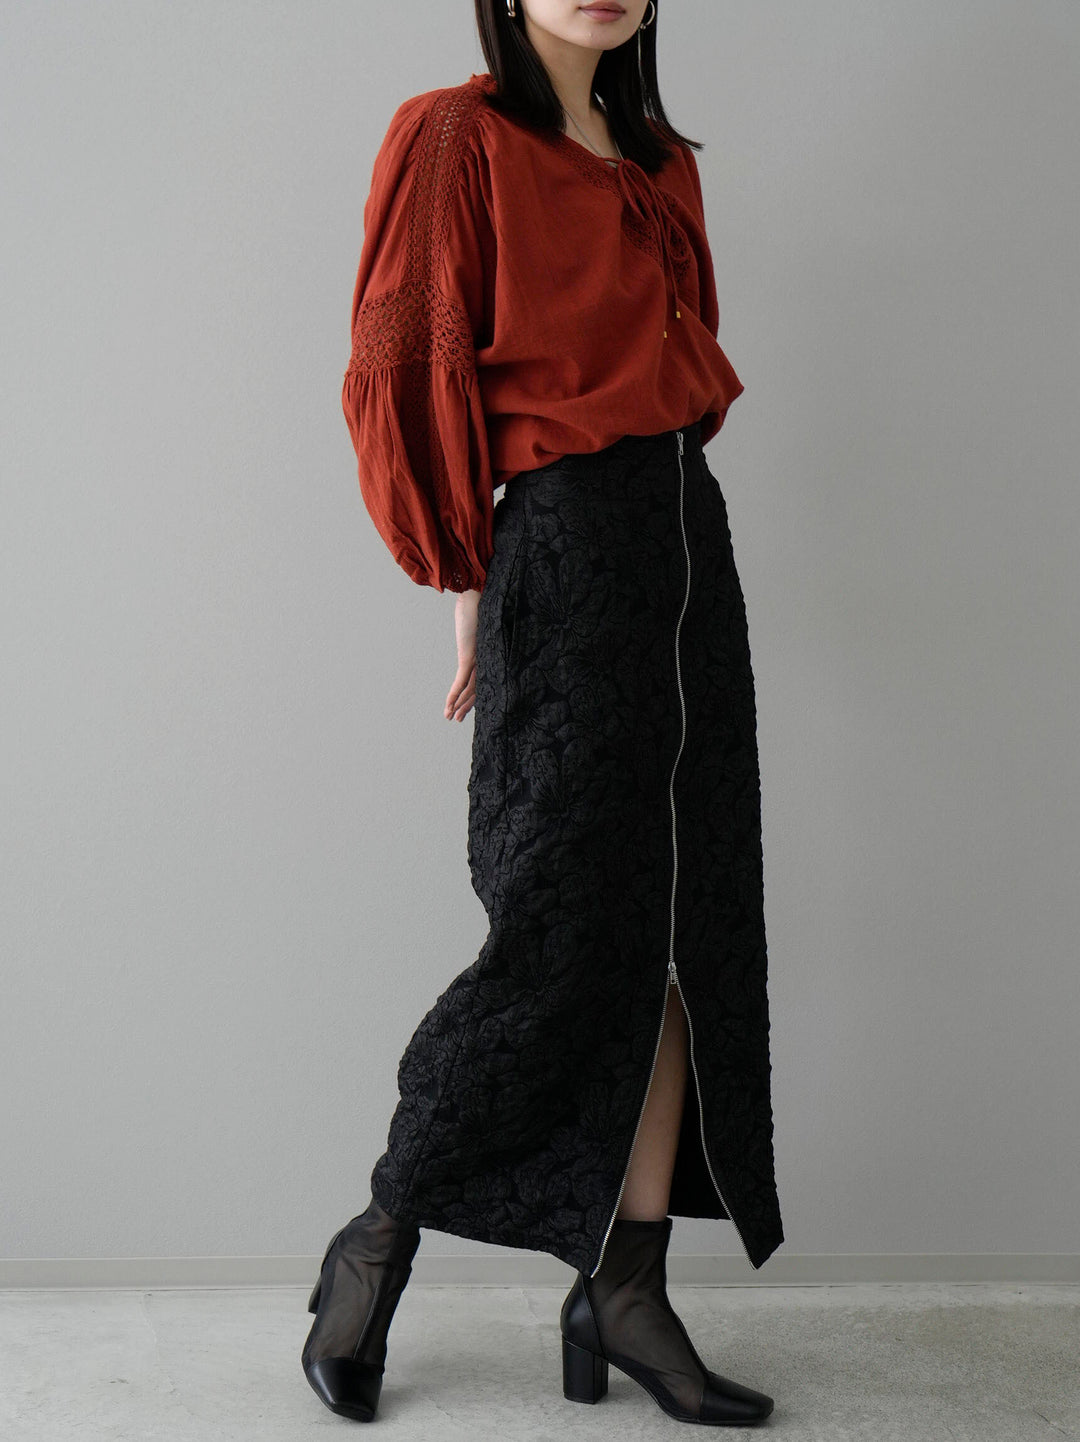 [SET] Cotton lace blouse + double zip puffy jacquard skirt (2set)